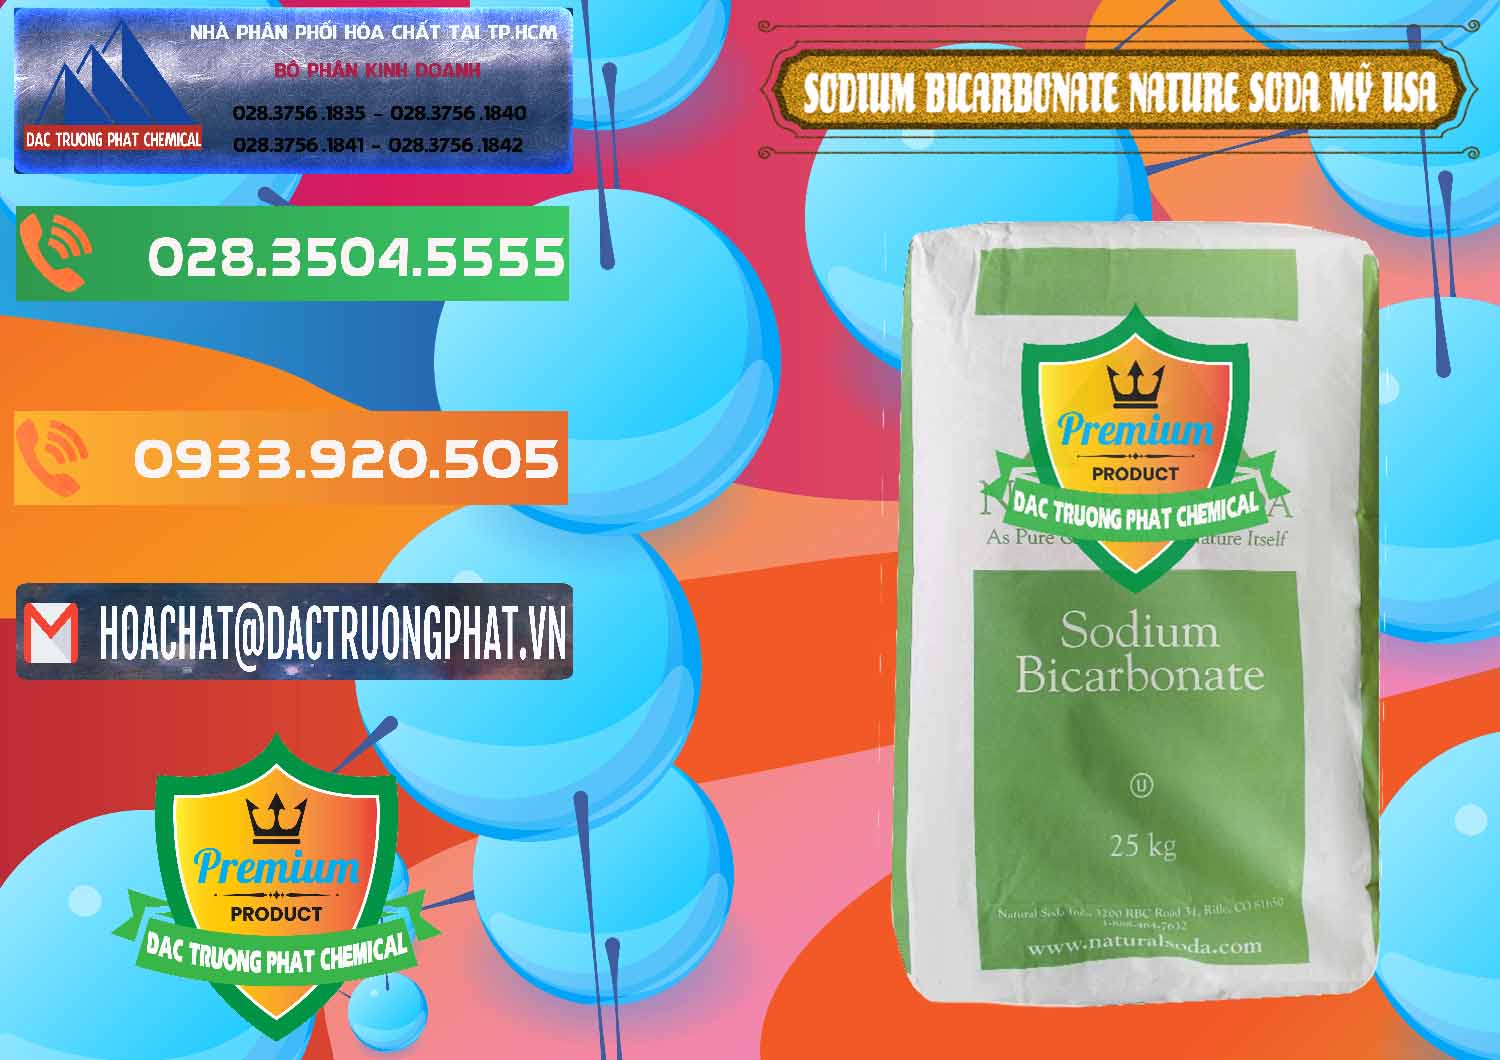 Nơi chuyên bán ( cung ứng ) Sodium Bicarbonate – Bicar NaHCO3 Food Grade Nature Soda Mỹ USA - 0256 - Nơi chuyên phân phối - bán hóa chất tại TP.HCM - hoachatxulynuoc.com.vn